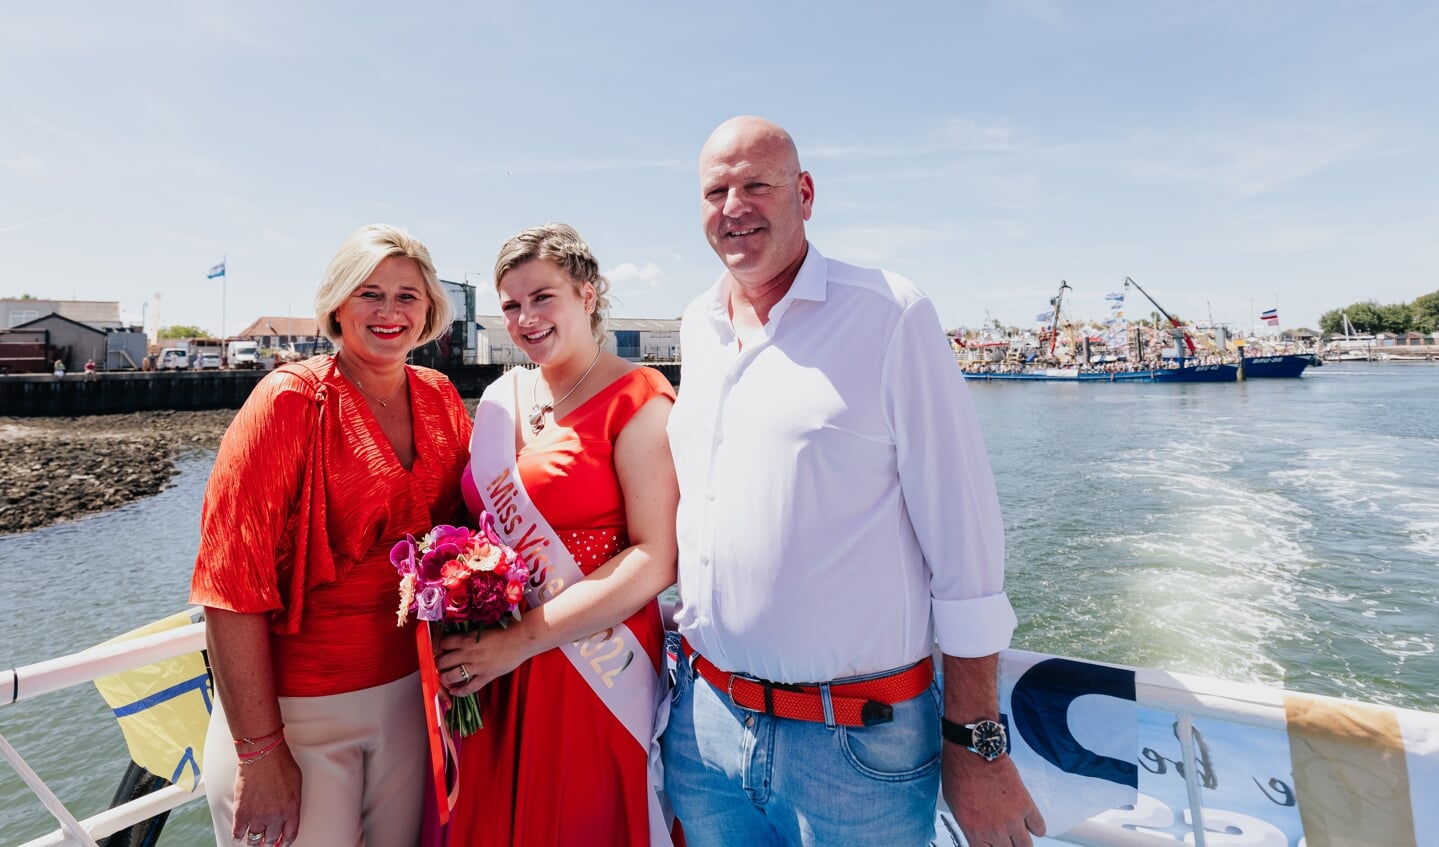 H Miss Visserij 2022 Dorien samen met haar ouders Leon en Lydia Padmos-Schraver. (Foto: Marinka Bosman)